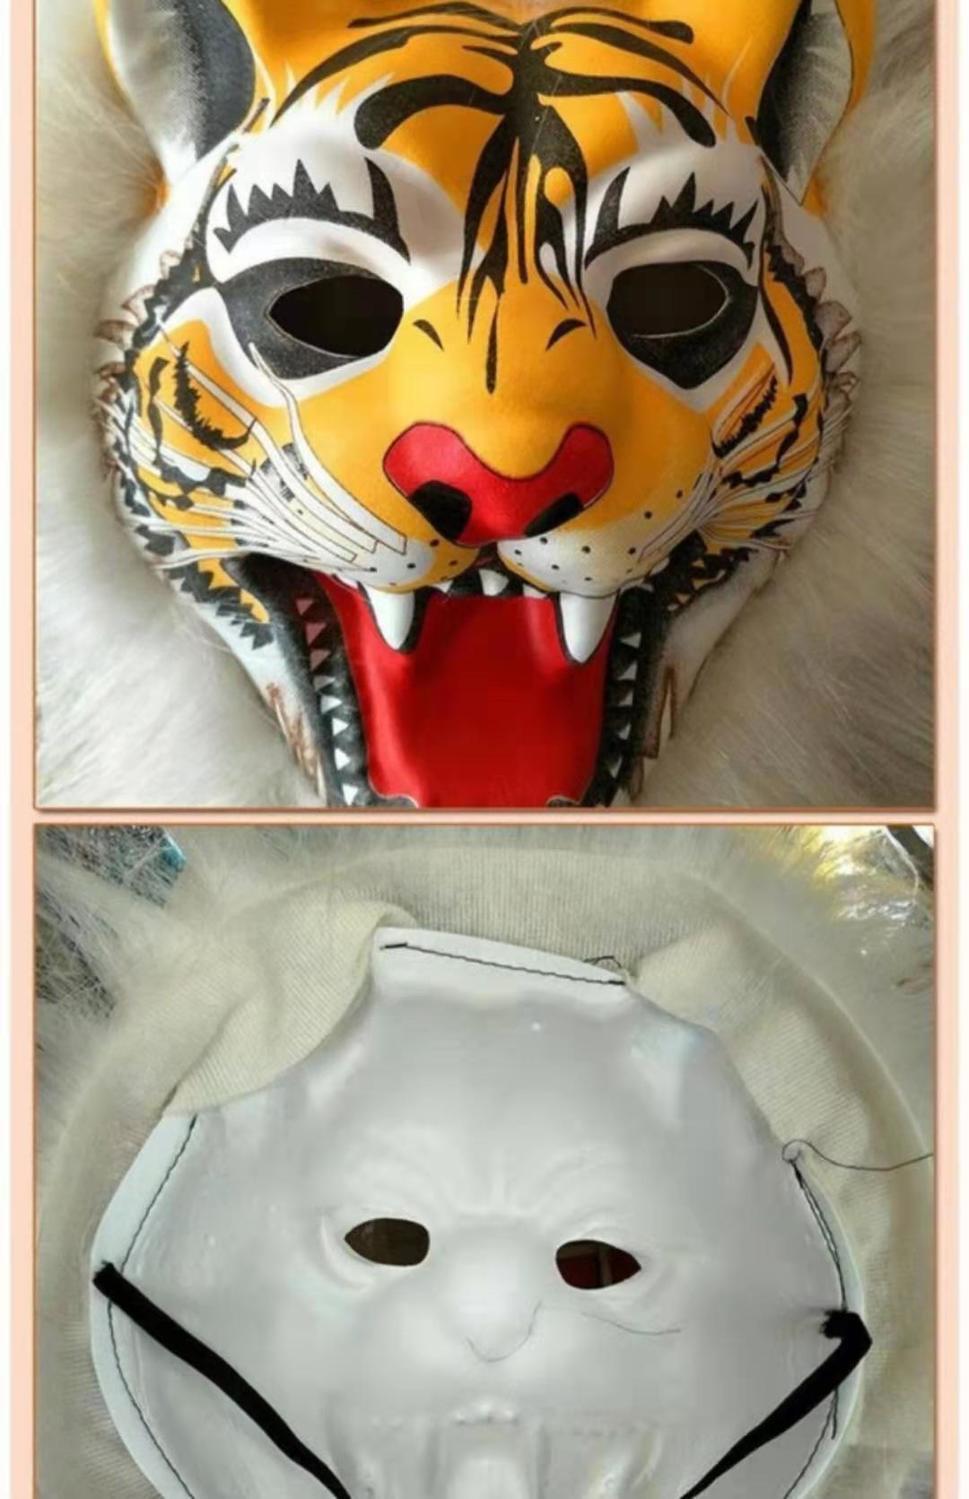 老虎面具制作方法图片